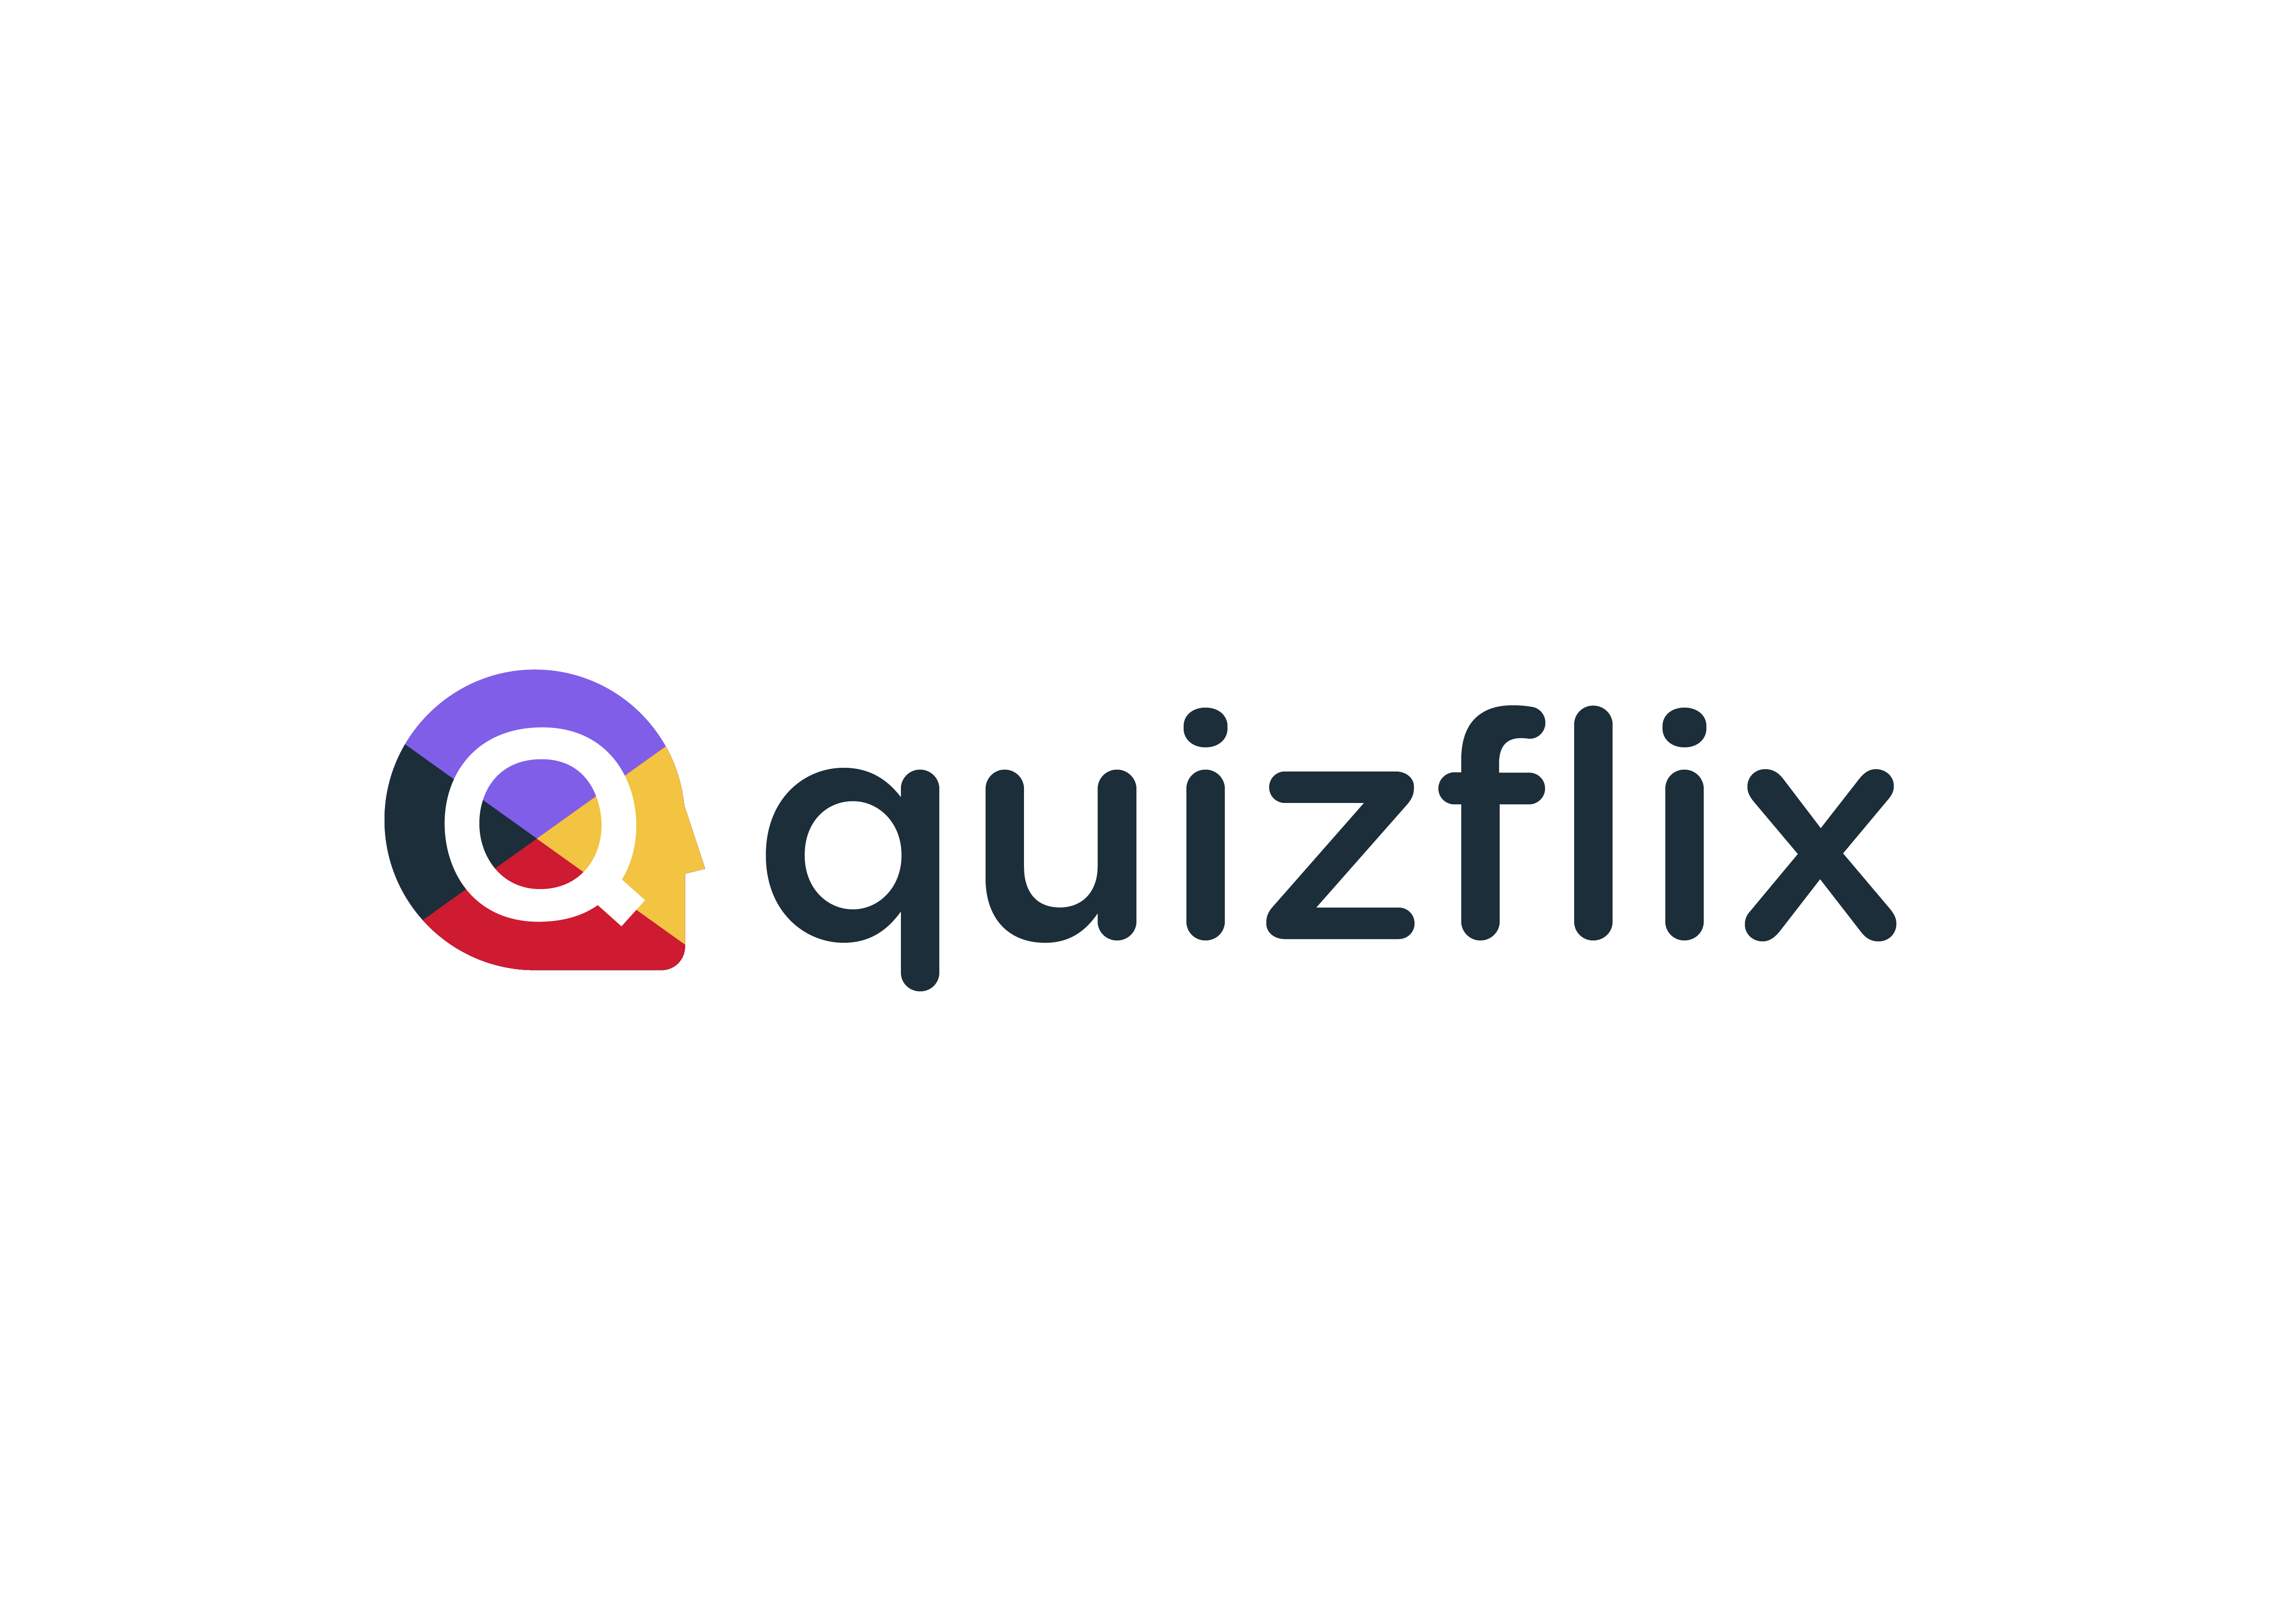 Quizflix